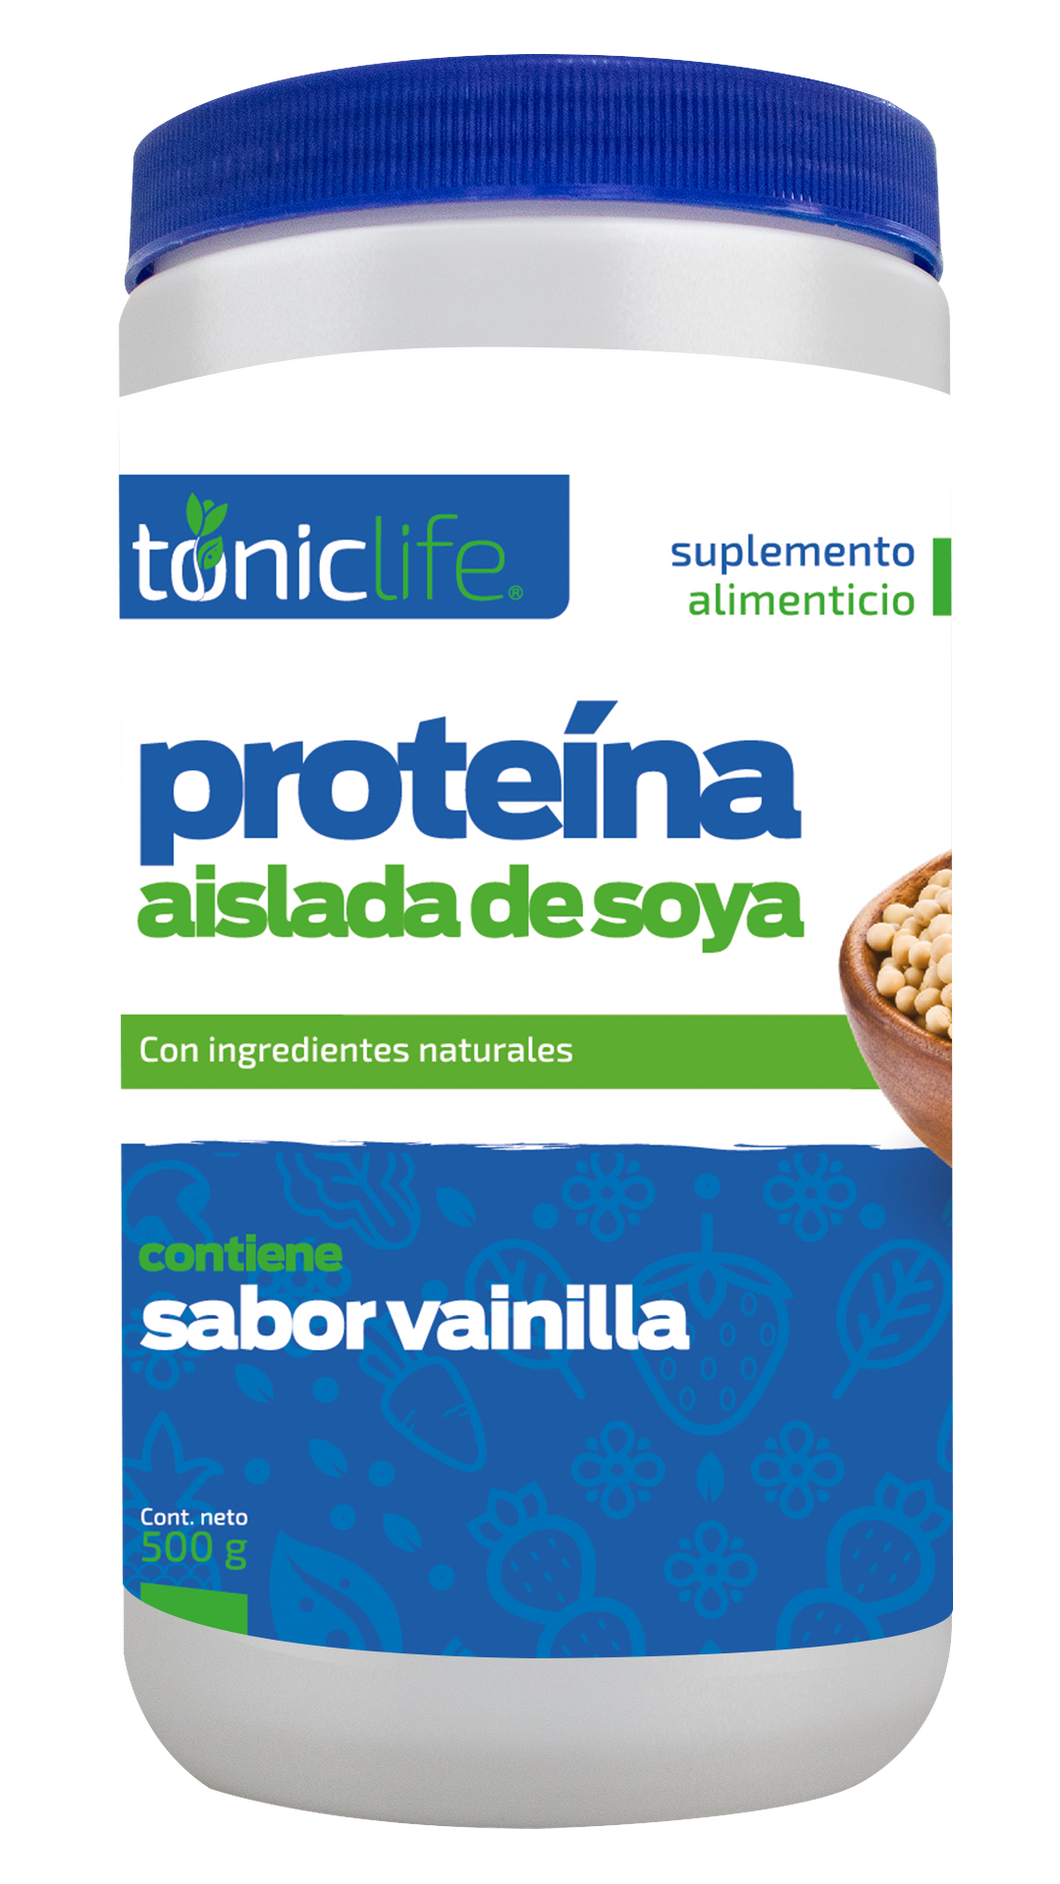 Proteina Aislada de Soya 17.63 oz